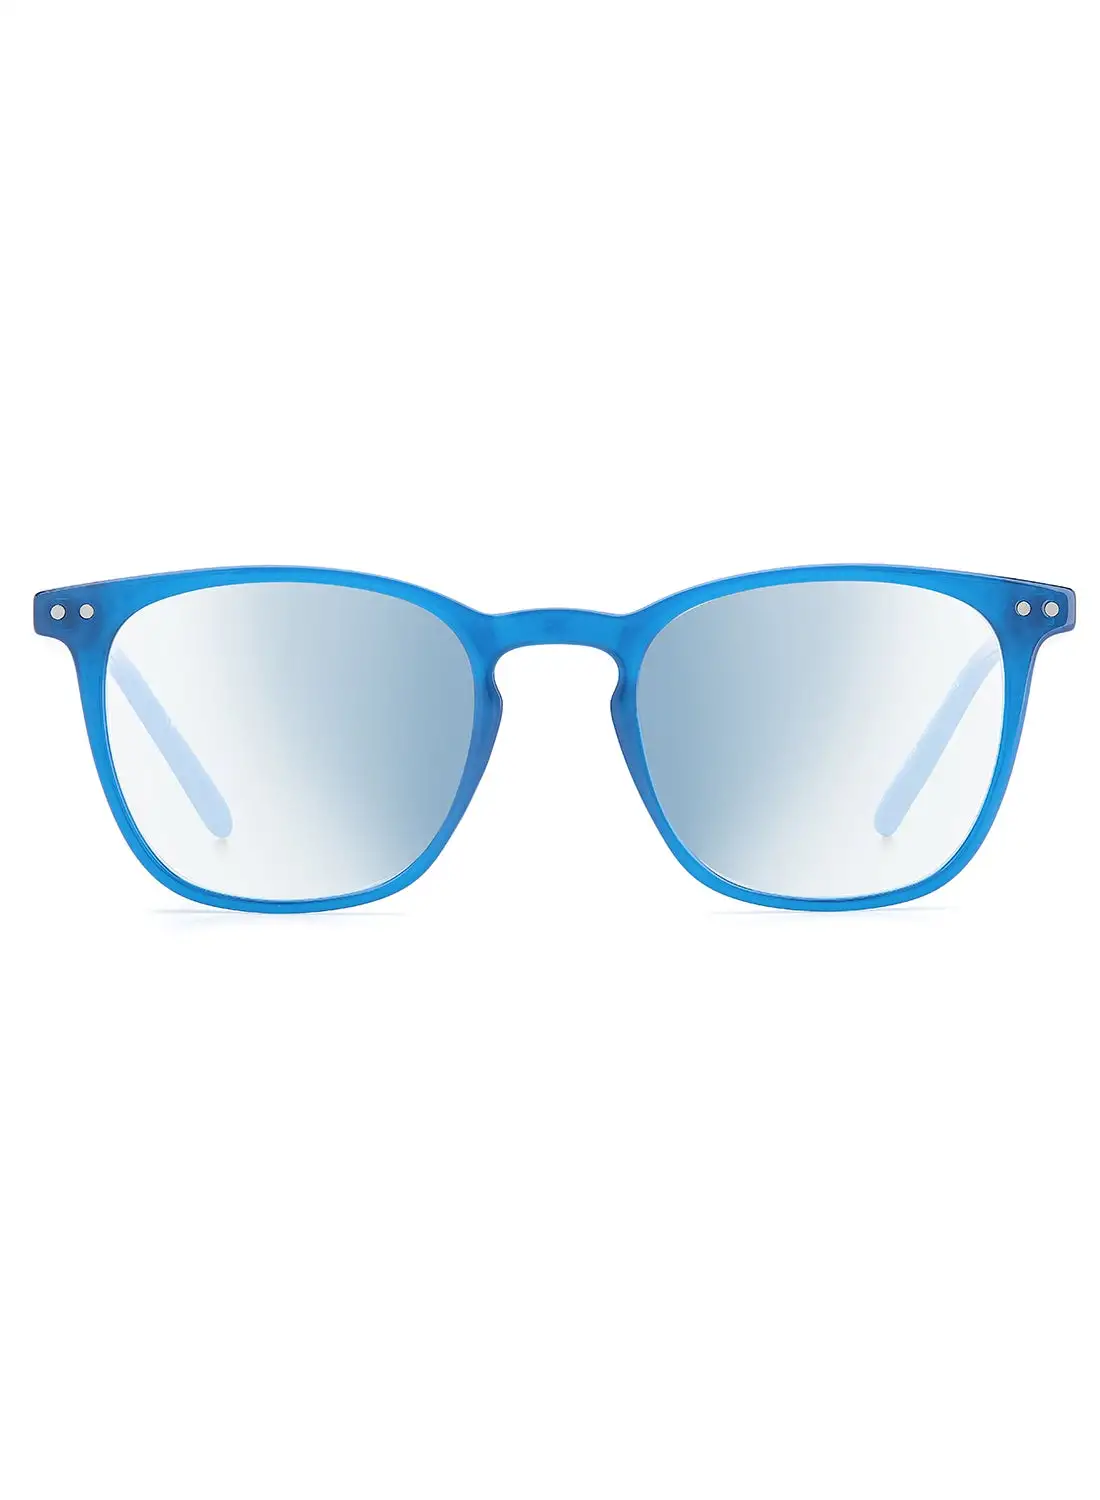 Polaroid Unisex Reading Glasses - Pld 0029/R/Bb Blue Azure 50 - Lens Size: 50 Mm